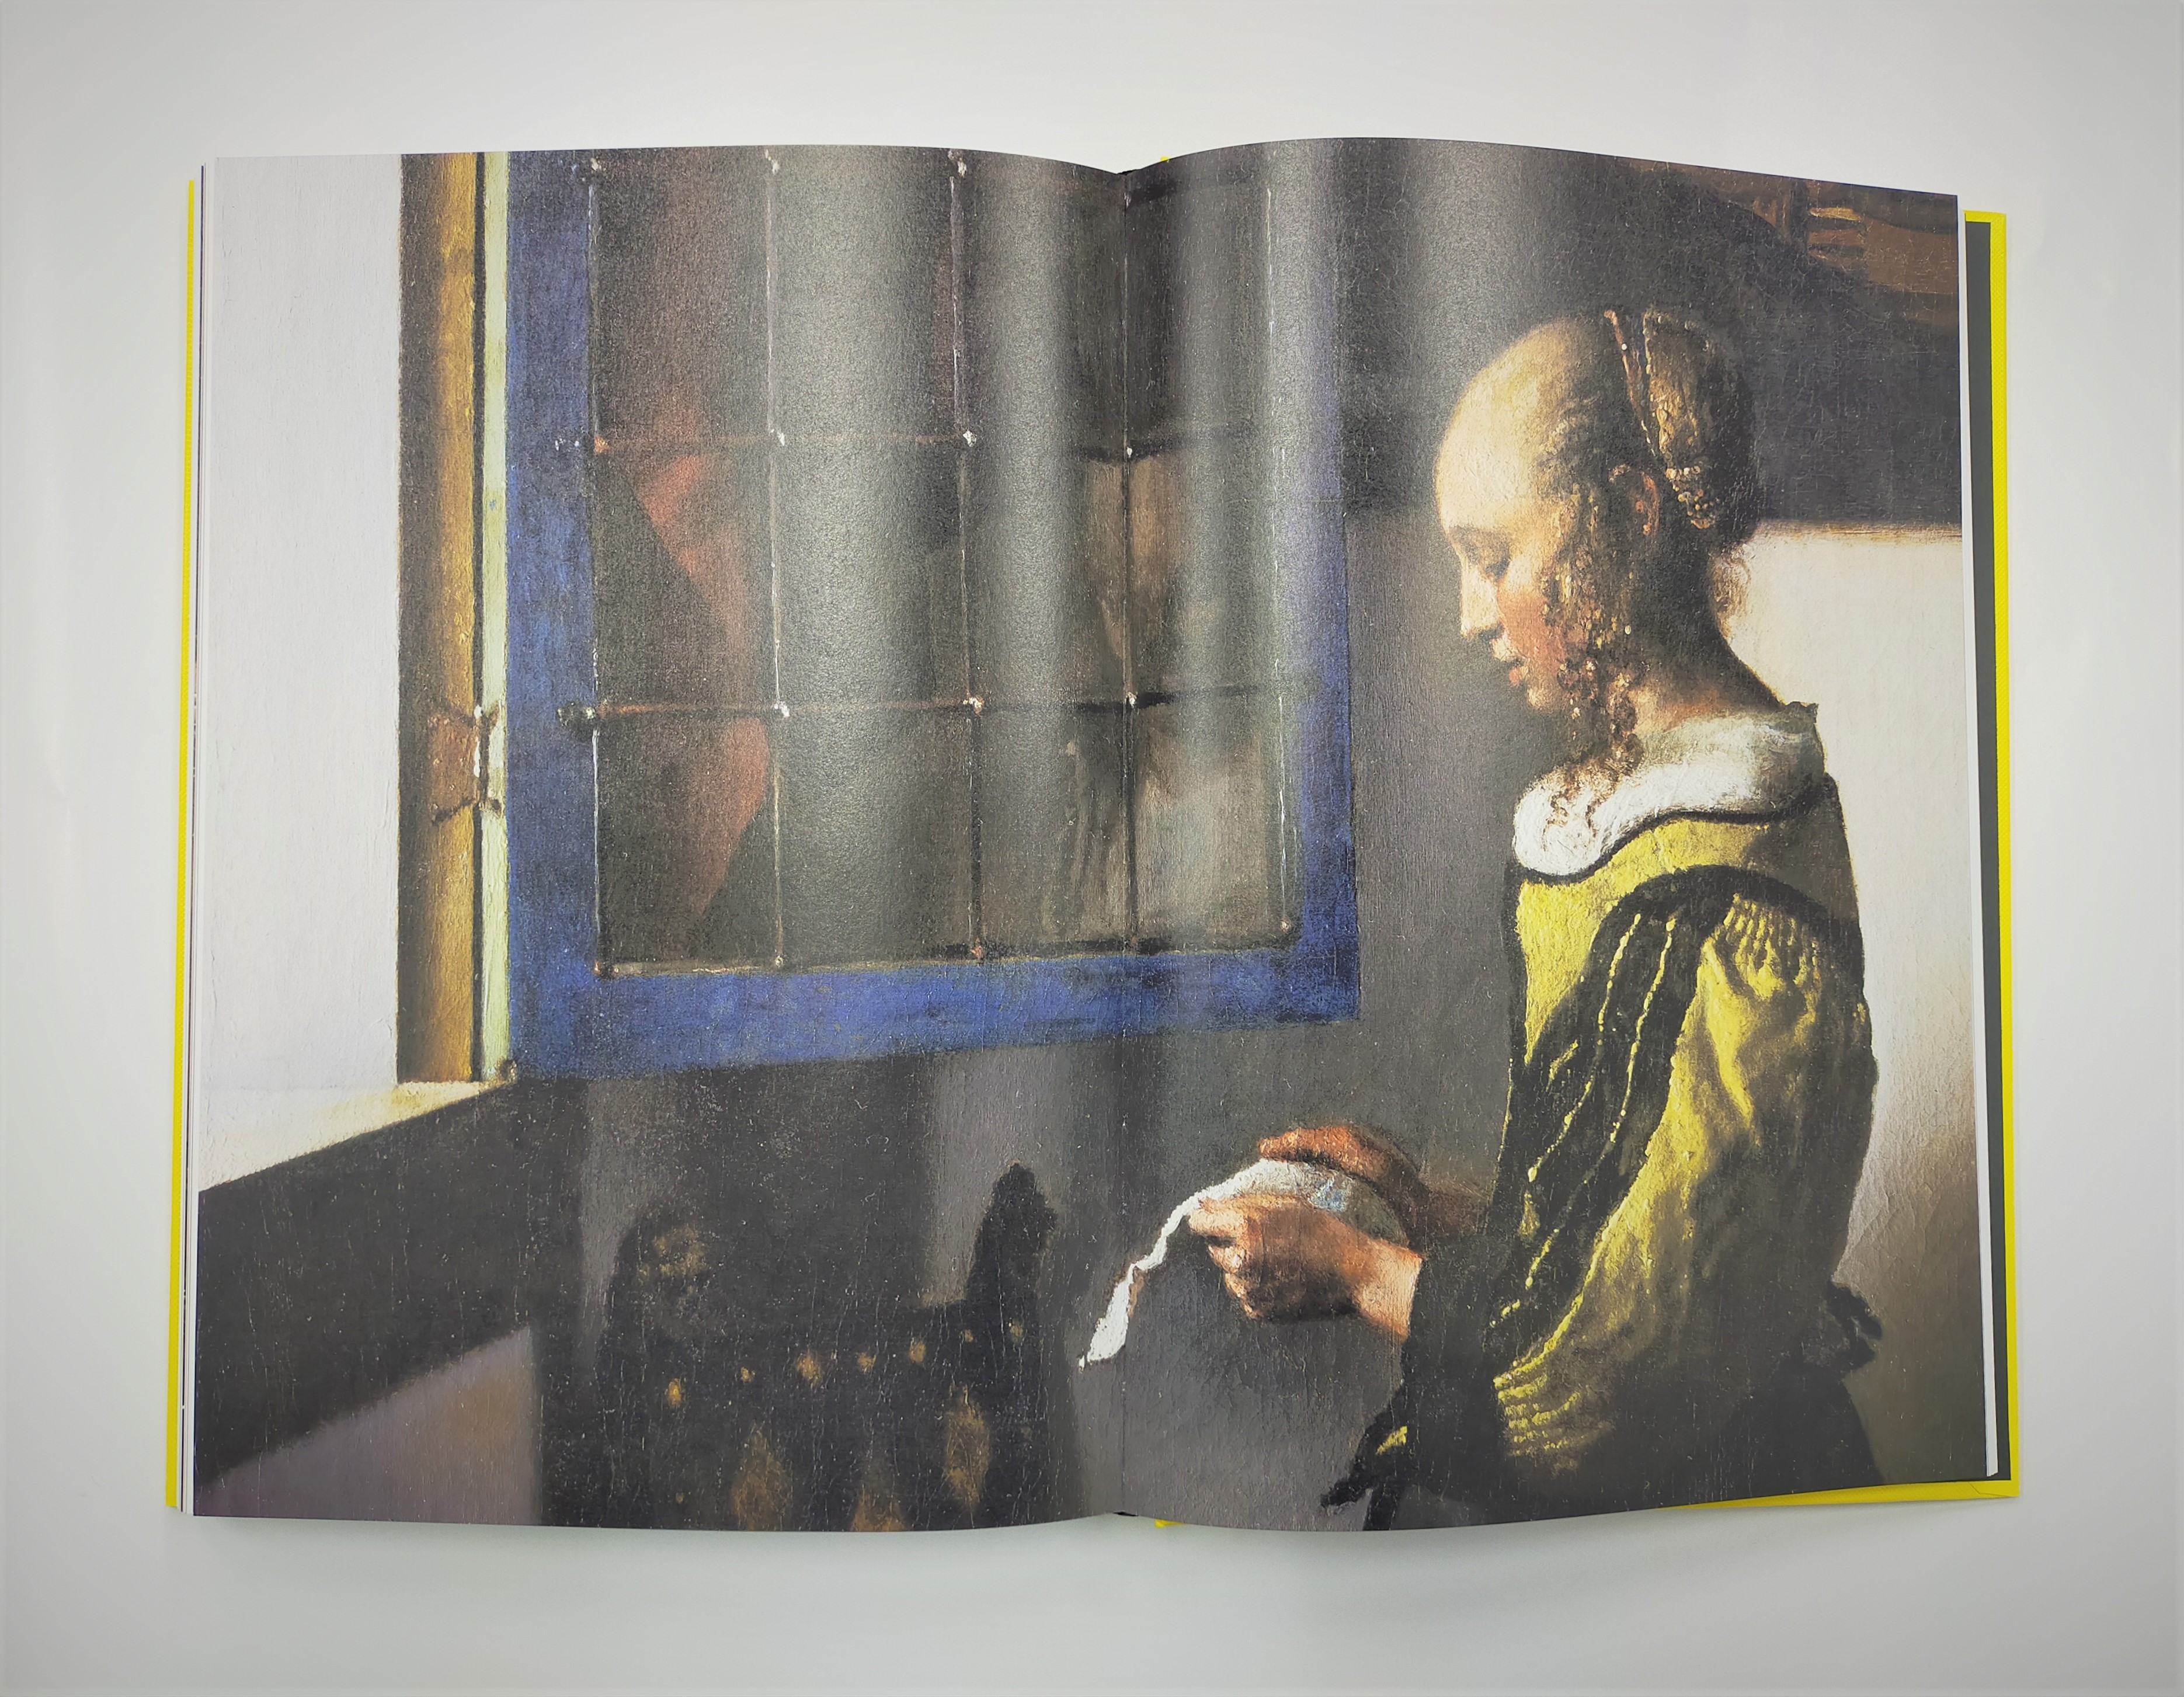 フェルメールと17世紀オランダ絵画展」公式図録 販売中 - 産経ニュース